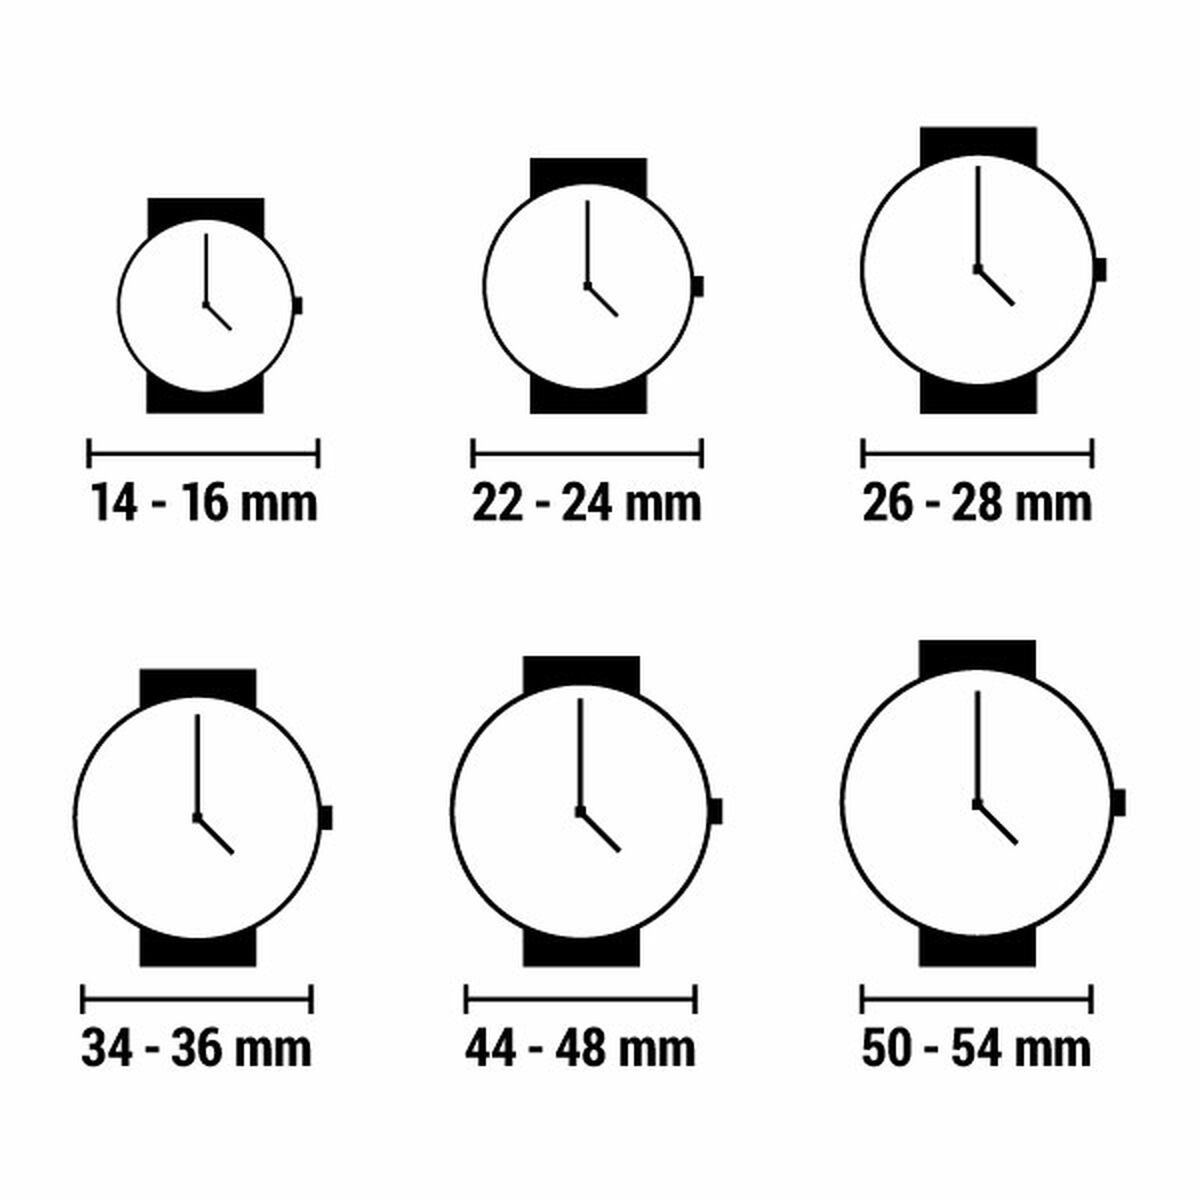 Horloge Dames Timex WATERBURY (Ø 26 mm)